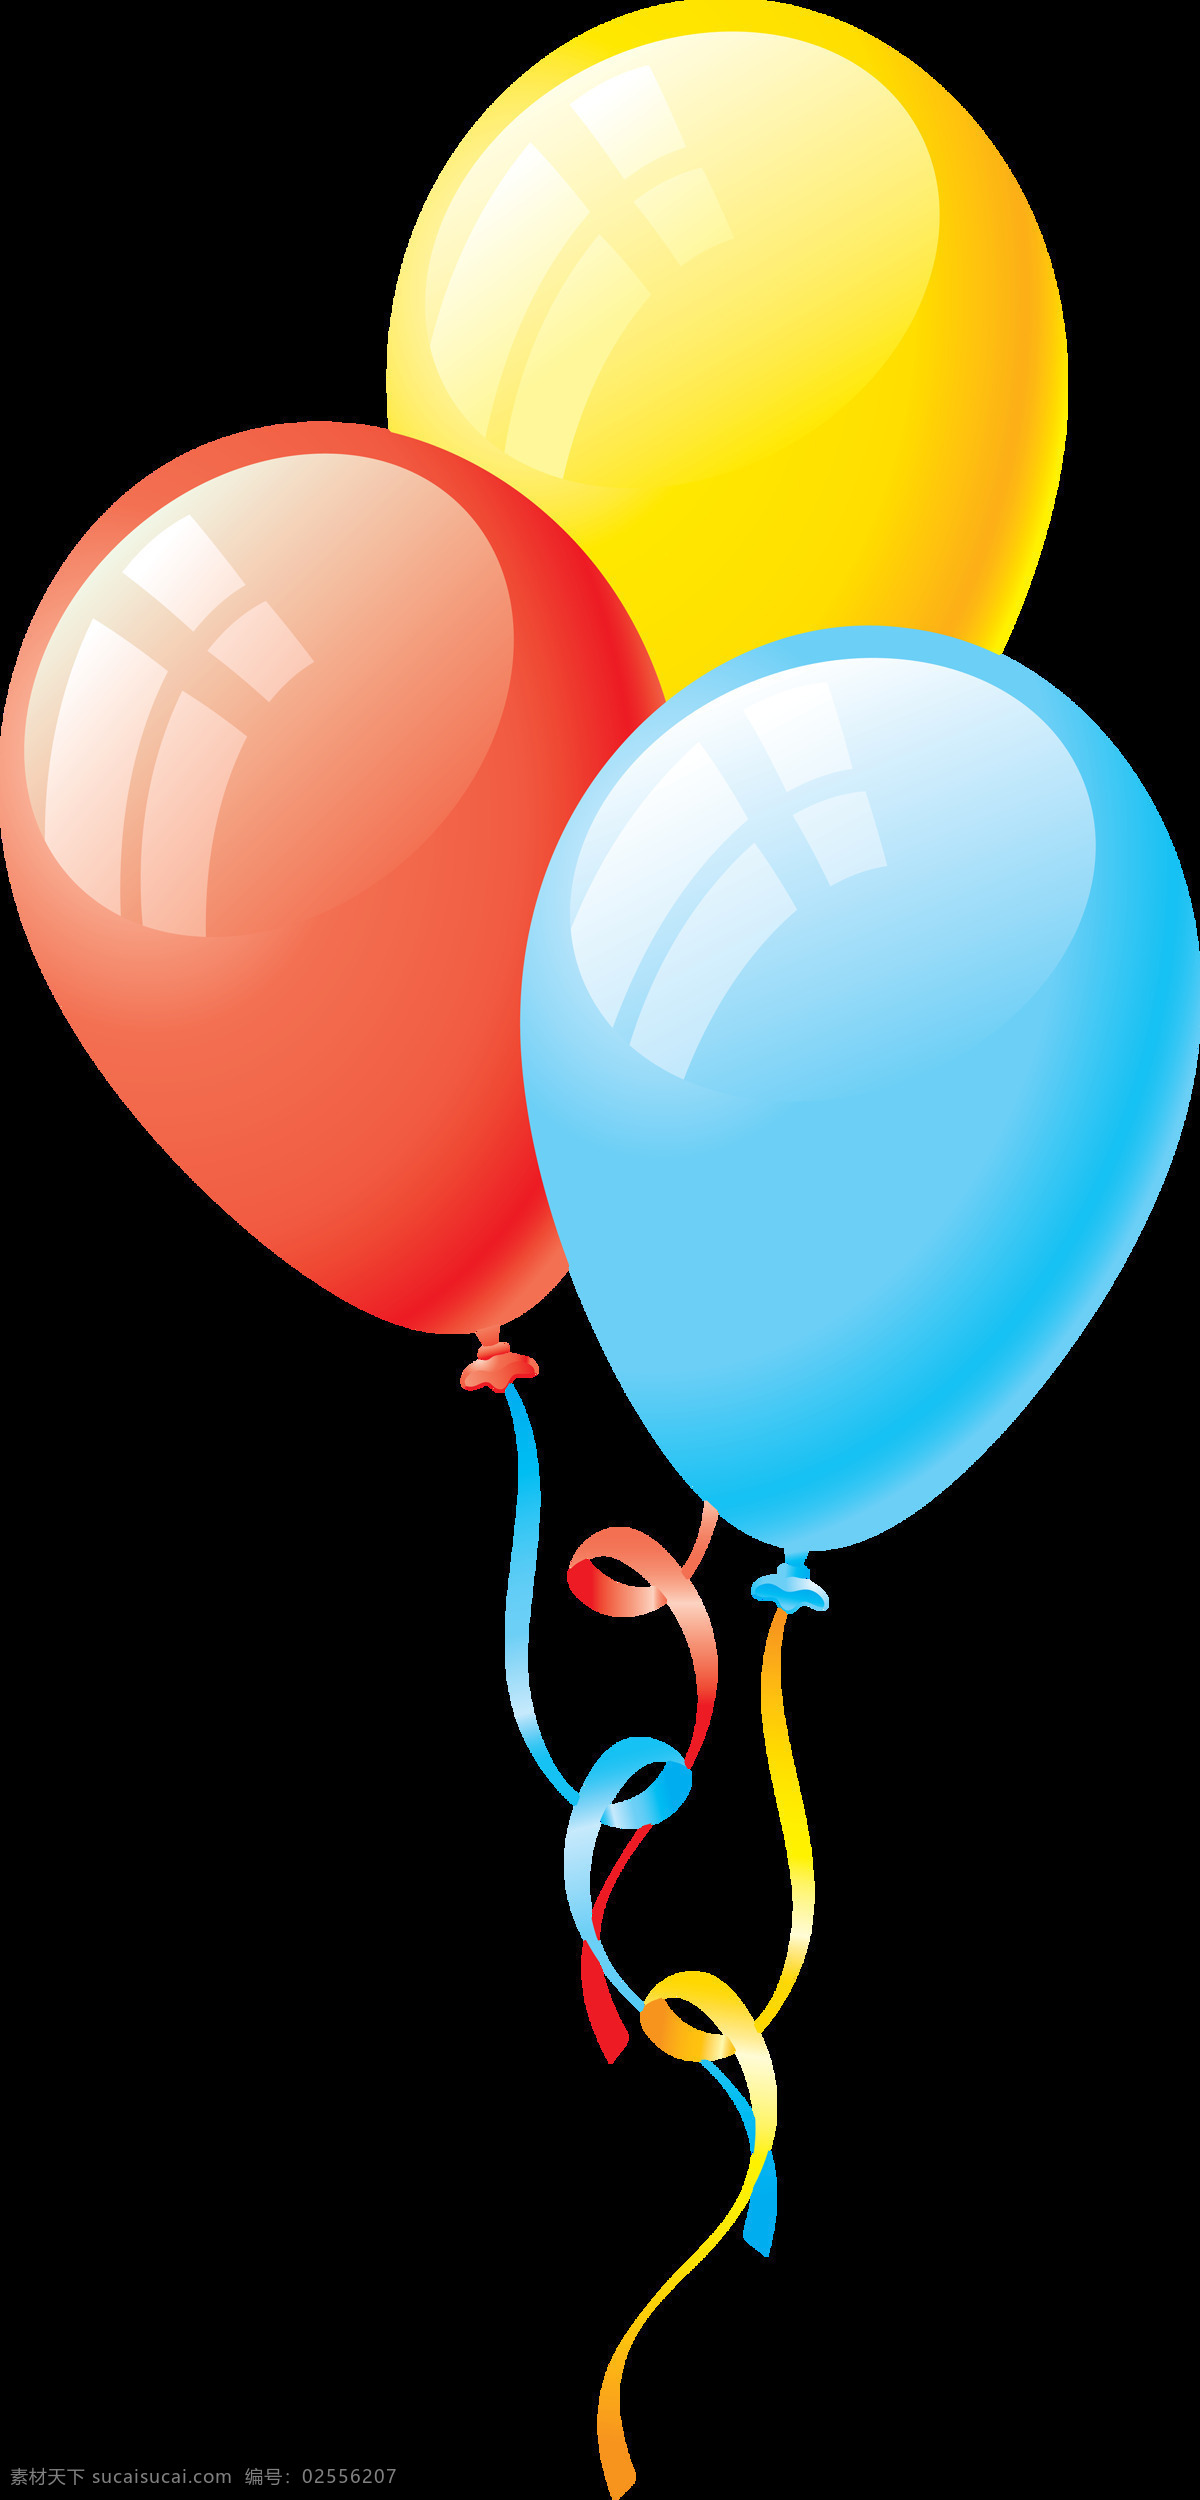 三个 彩色 气球 免 抠 透明 图 层 放飞气球 放飞梦想图片 氢气球图片 气球图片 气球海报 唯美 单个 心形气球图 气球装饰图片 简 笔画